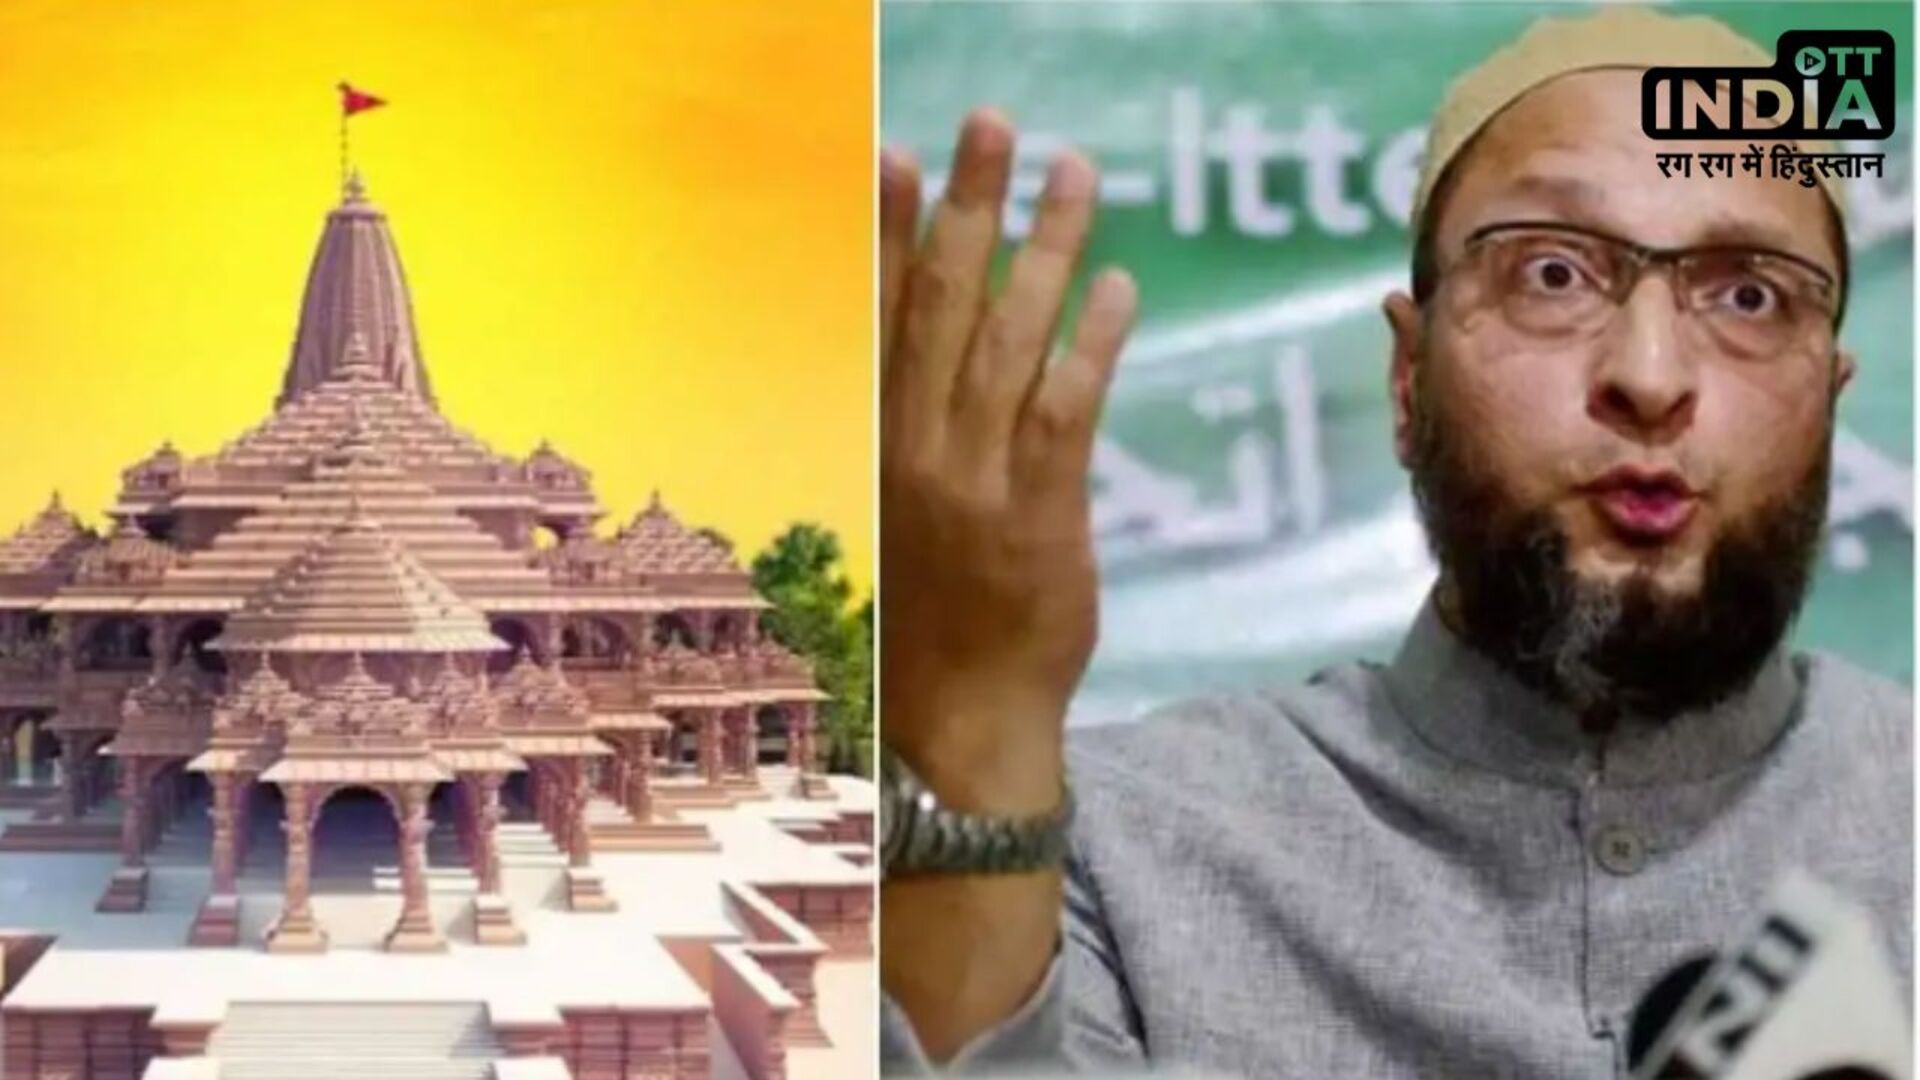 Ram Mandir: असदुद्दीन ओवैसी ने फिर उठाए राम मंदिर पर सवाल, बोलें- बाबरी मस्जिद को मुसलमानों से छीना गया…